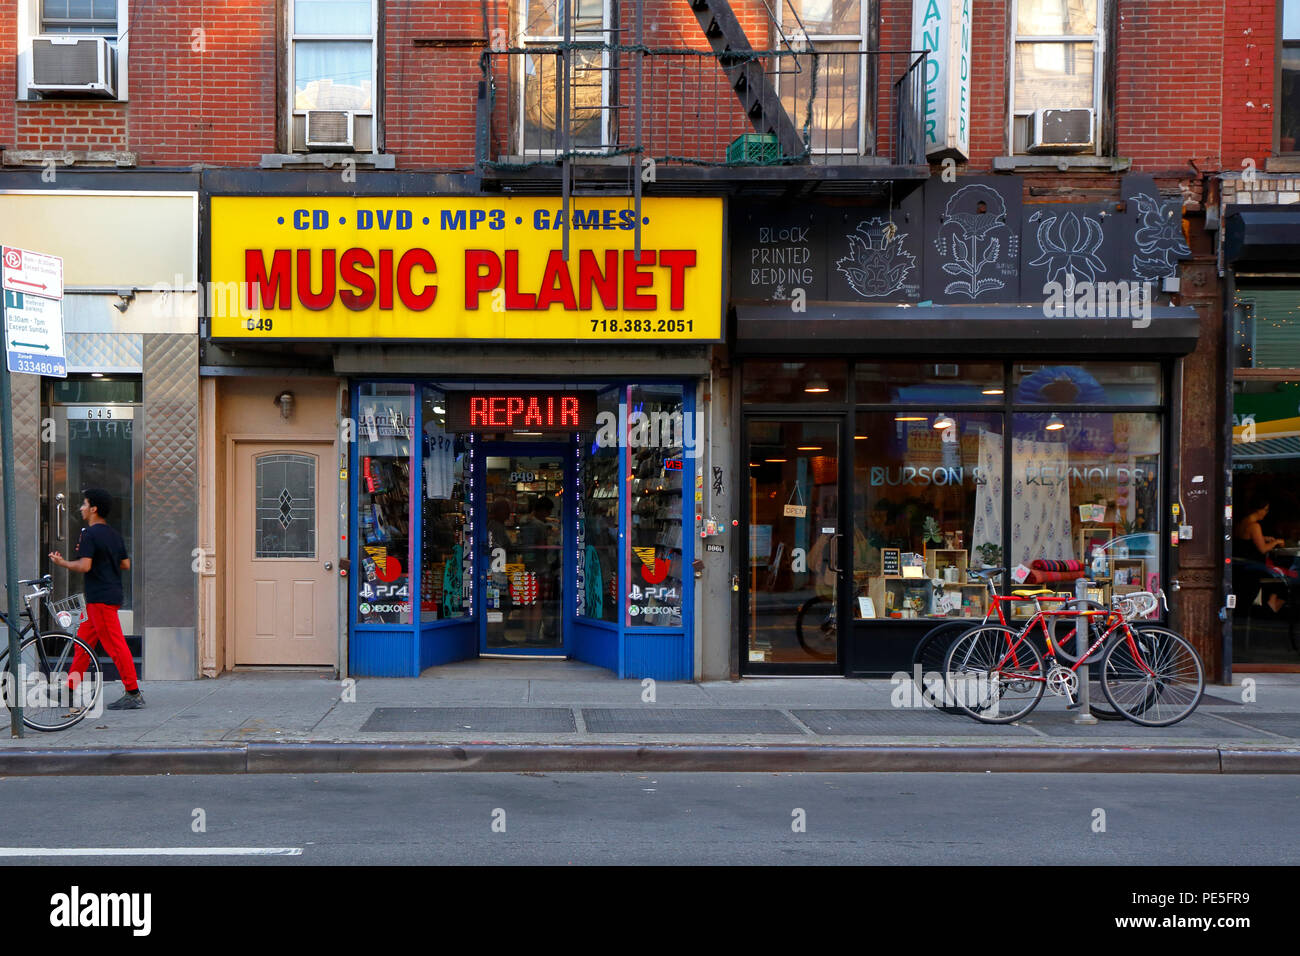 Music Planet, Burson et Reynolds, 649 avenue de Manhattan, Brooklyn, New York. magasin de disques et de produits d'accueil dans les devantures de greenpoint Banque D'Images